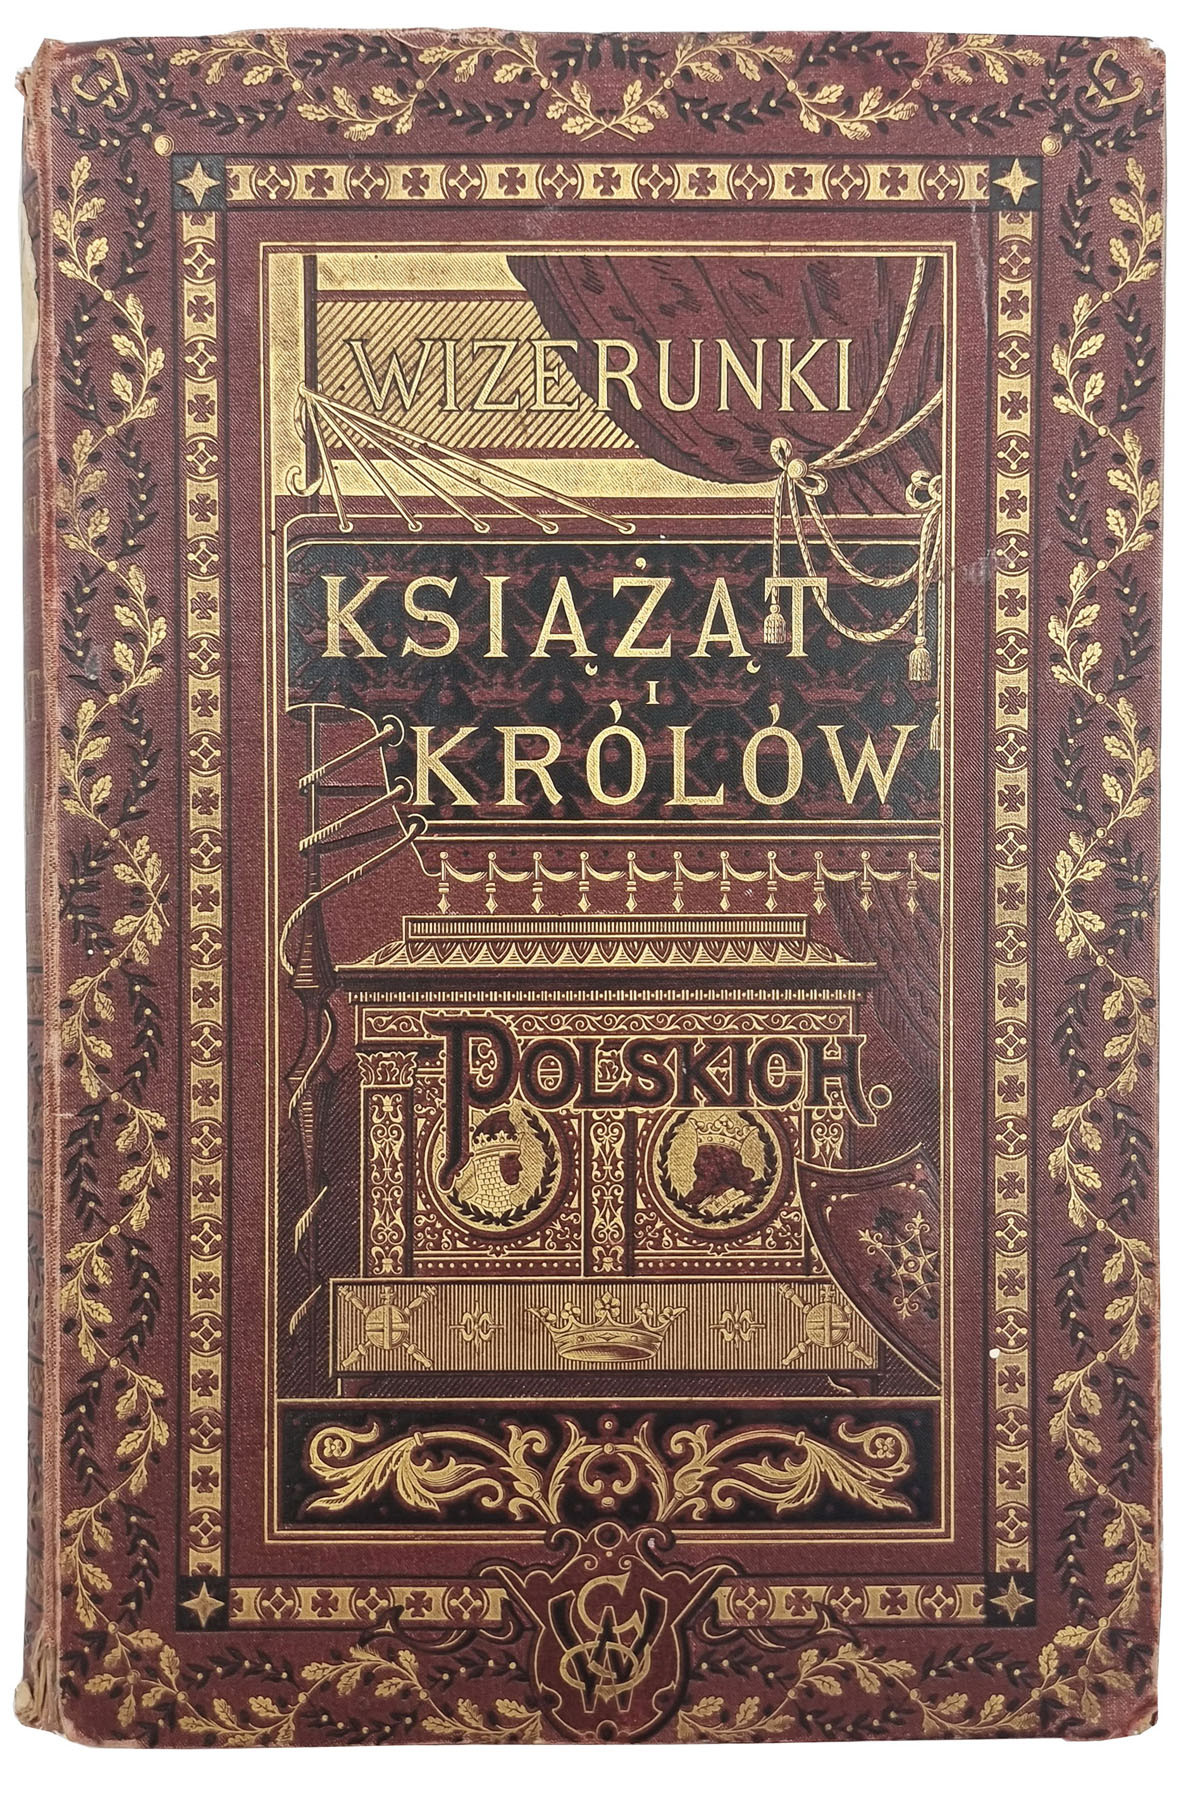 Wizerunki Książąt i Królów Polskich. Józef Ignacy Kraszewski, Warszawa 1888